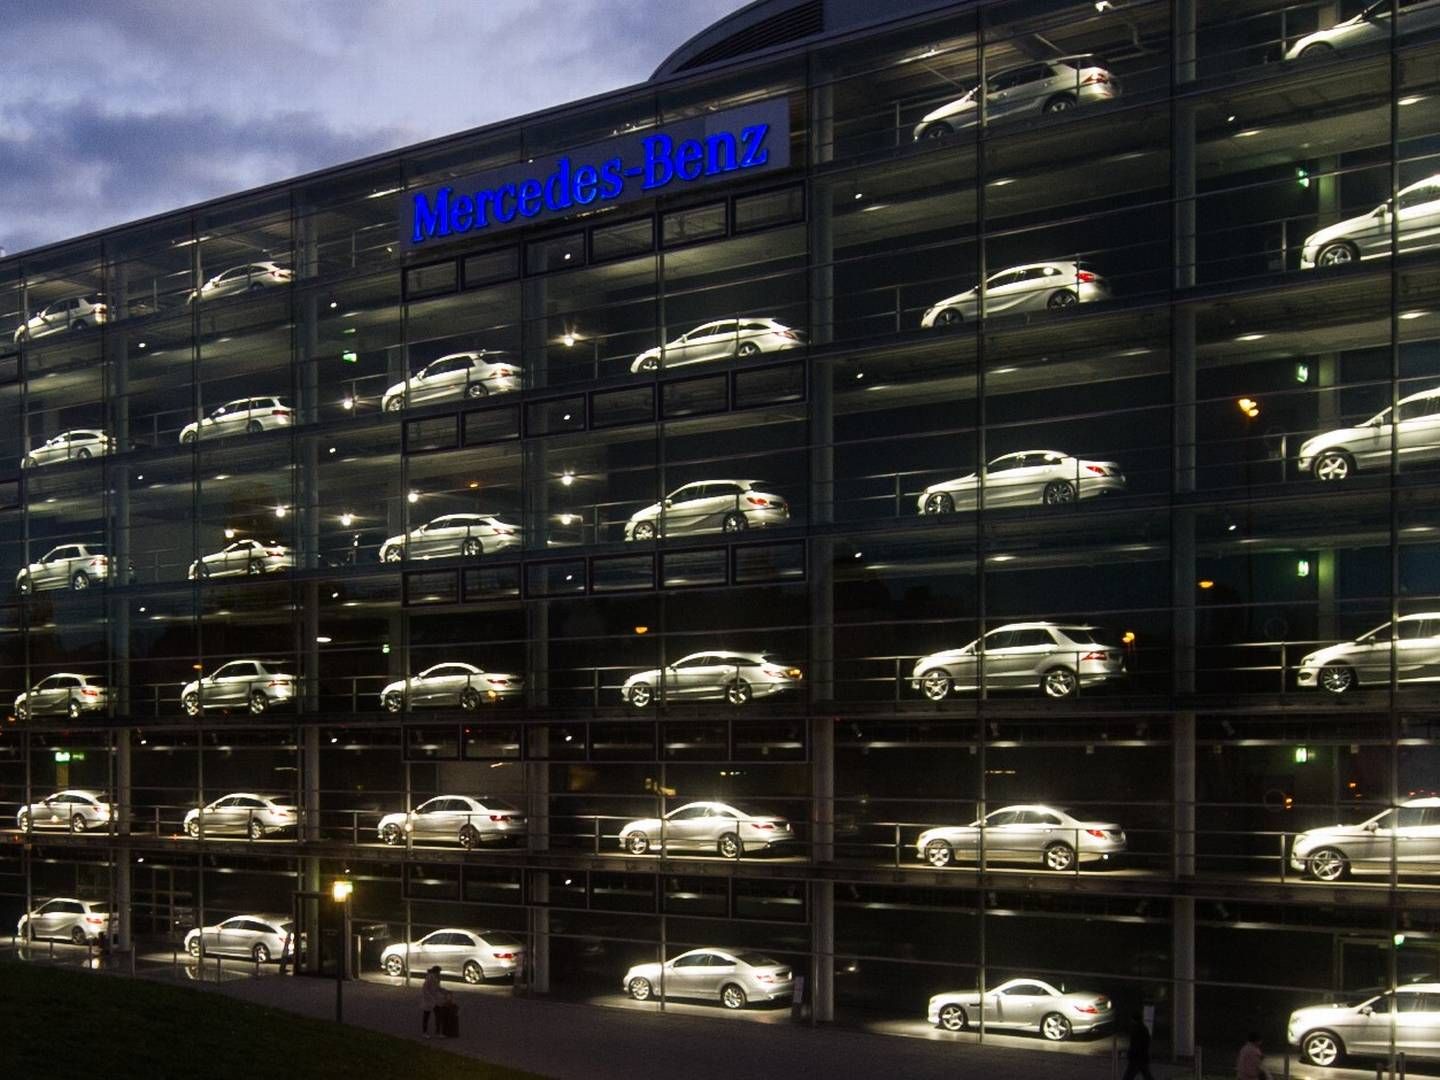 Ausstellung von Mercedes-Benz-Neuwagen. | Foto: picture alliance / dpa Themendienst | Tobias Hase